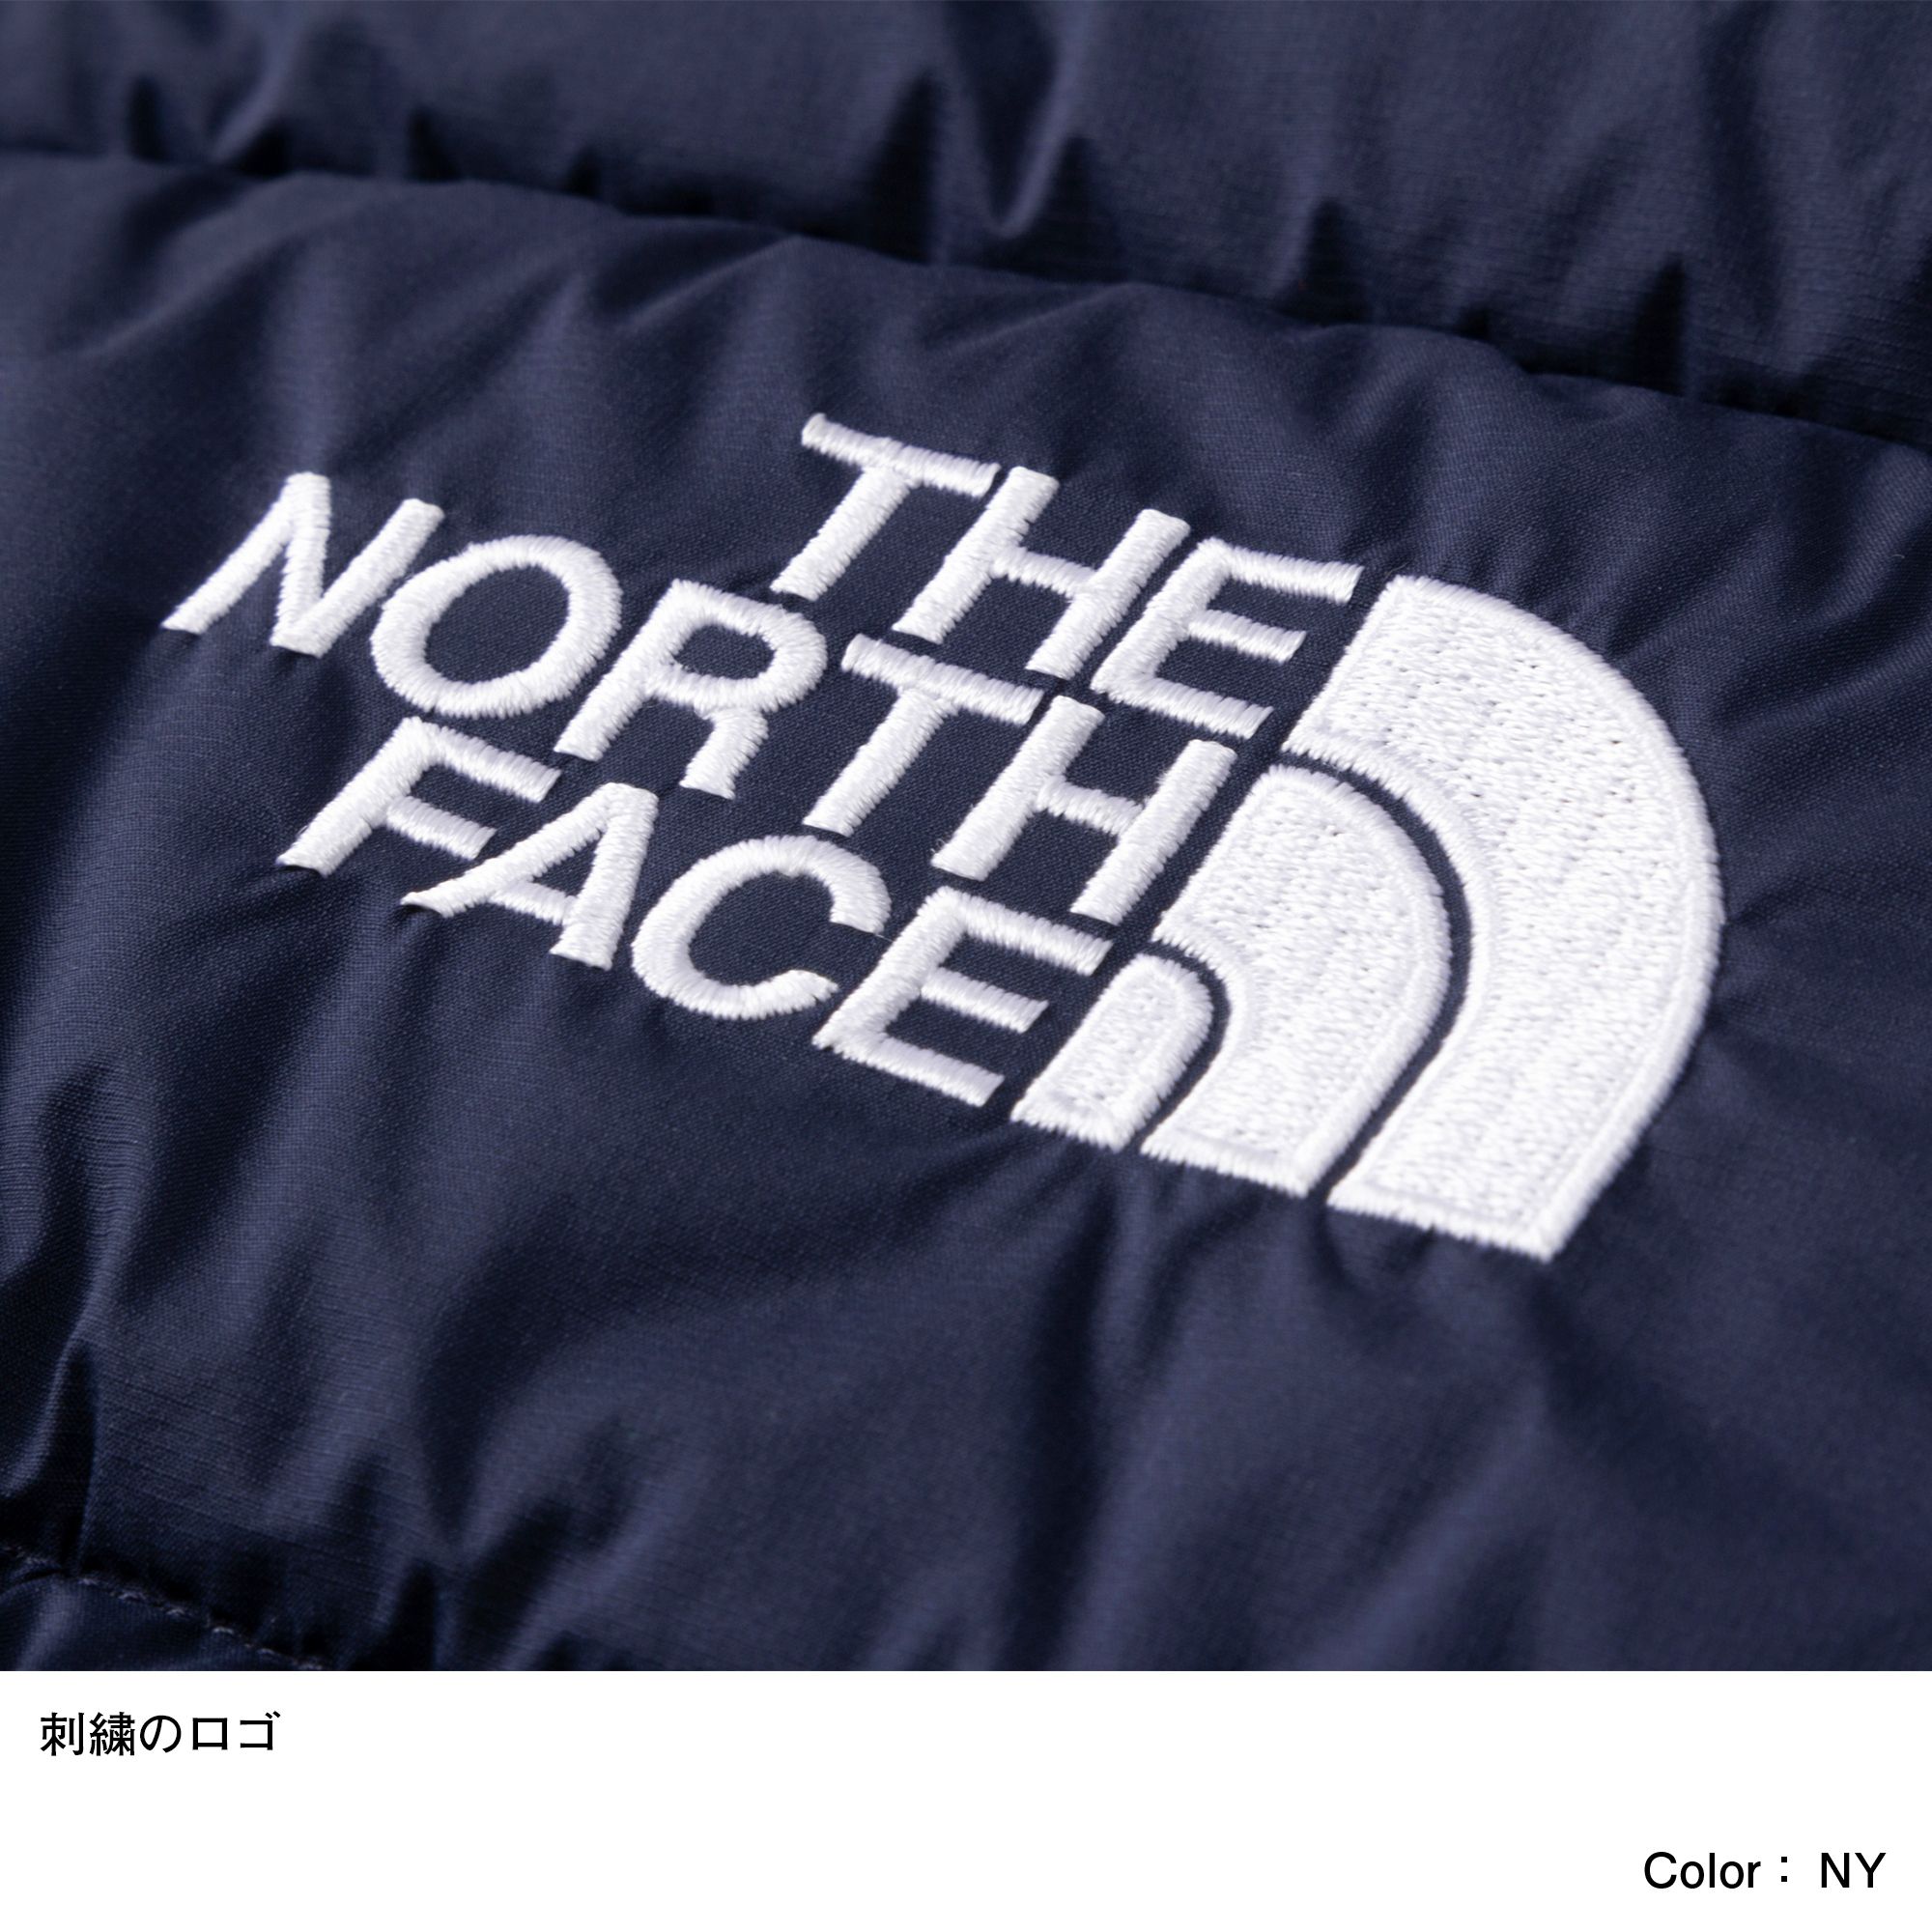 シェルブランケット（ベビー）（NNB71901）- THE NORTH FACE公式通販